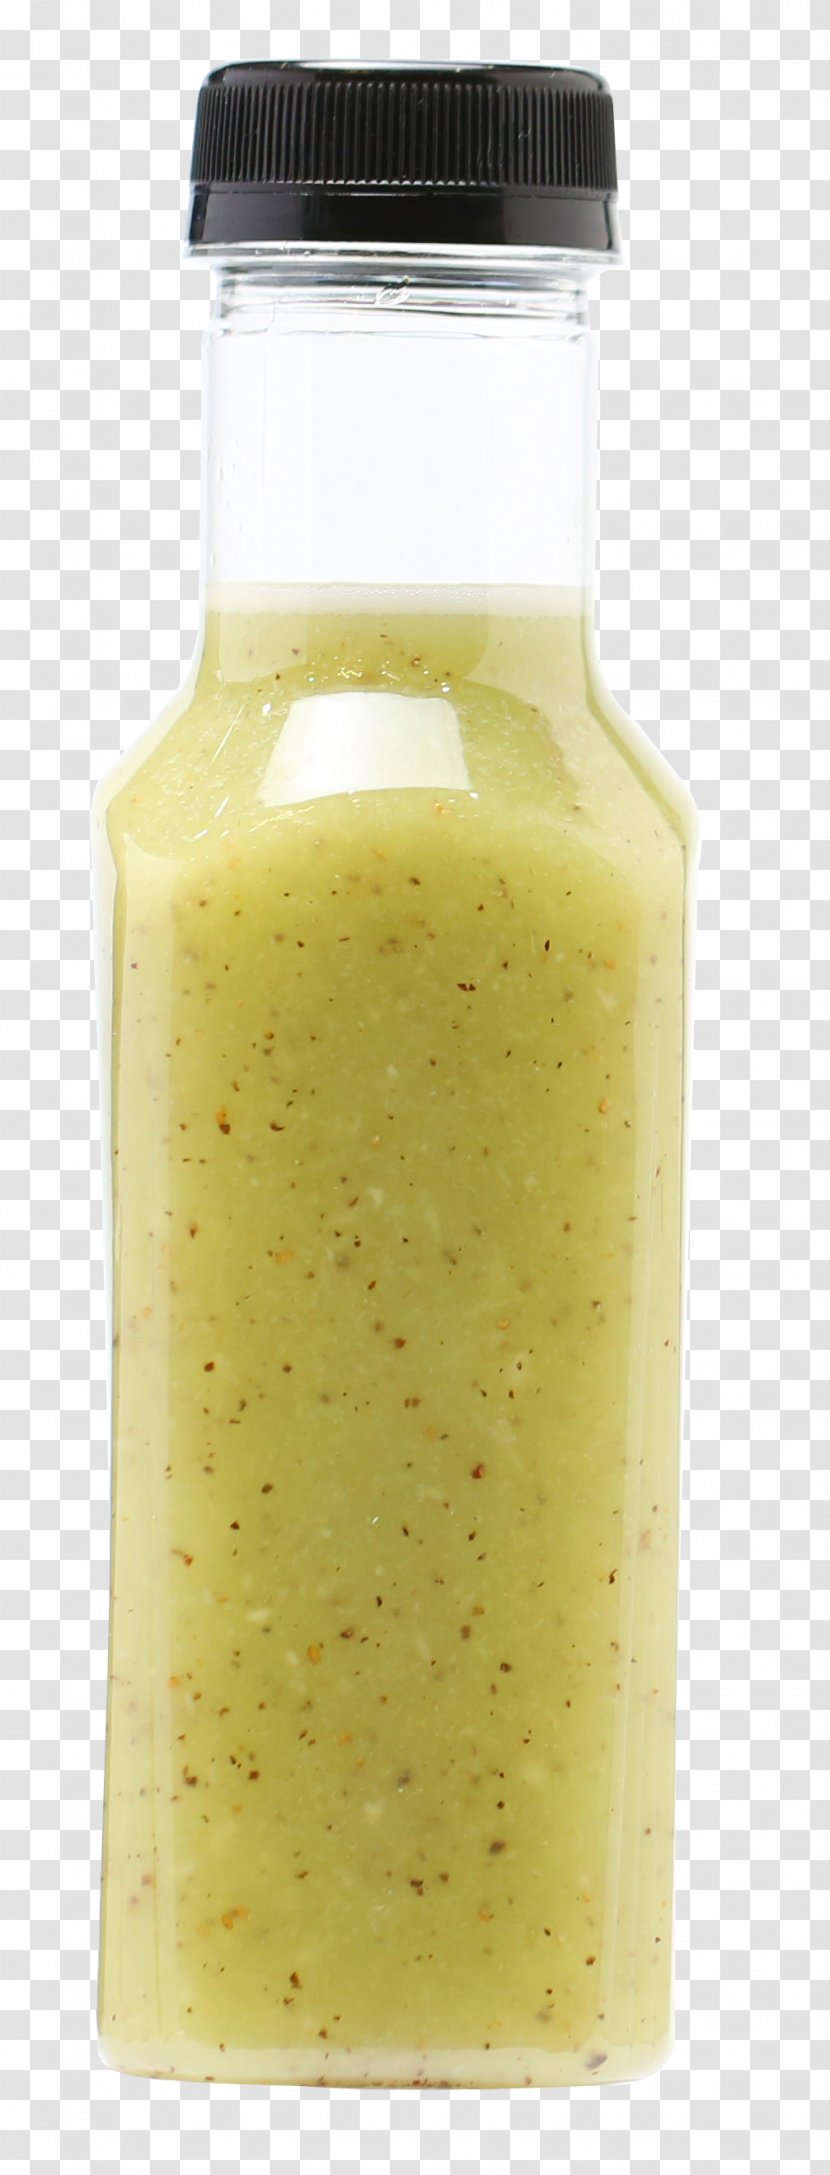 Condiment Flavor - A Bottle Of Juice Transparent PNG